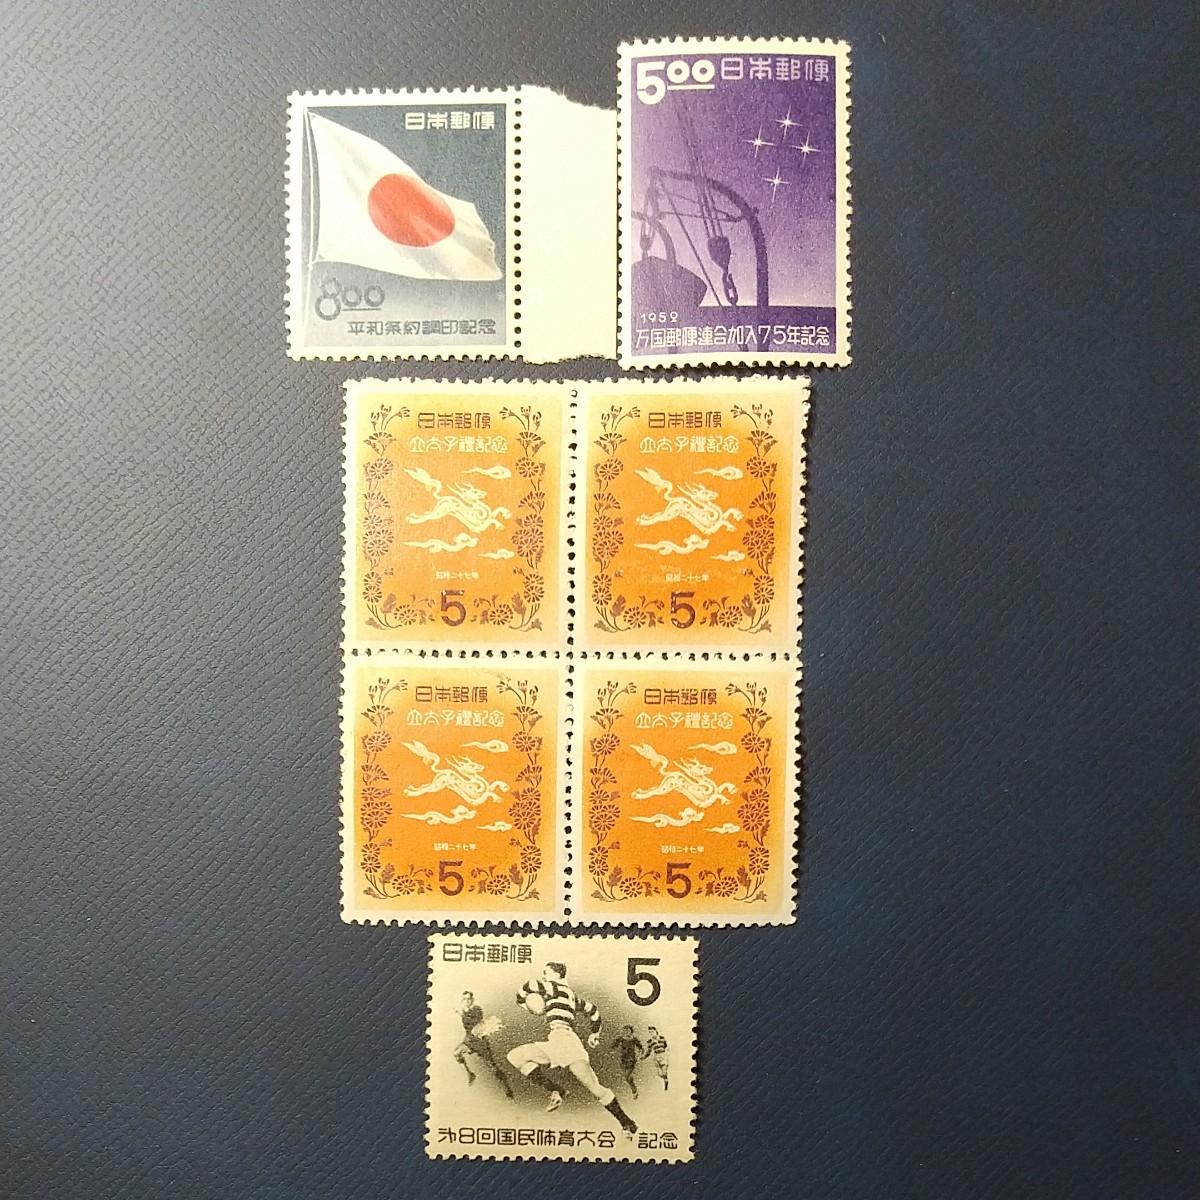 切手コレクション 1950年代の切手を集めてみた 平和条約 立太子礼など